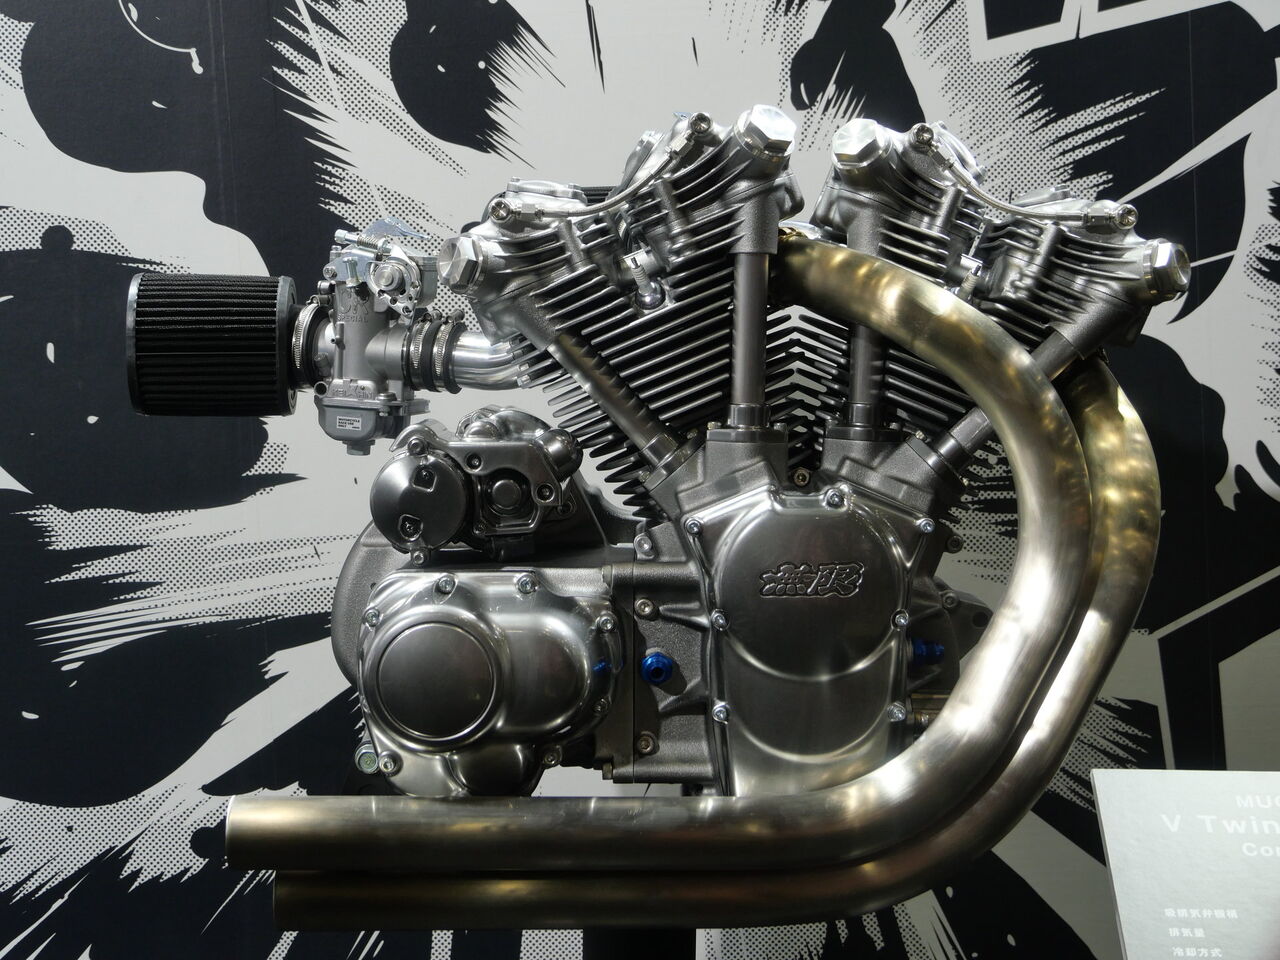 Hondaの車のパーツメーカー無限がvツインエンジンを作る 双極性障害なバイクブログ Gn125h Xl8 Steed600 Ge Fit Inspire